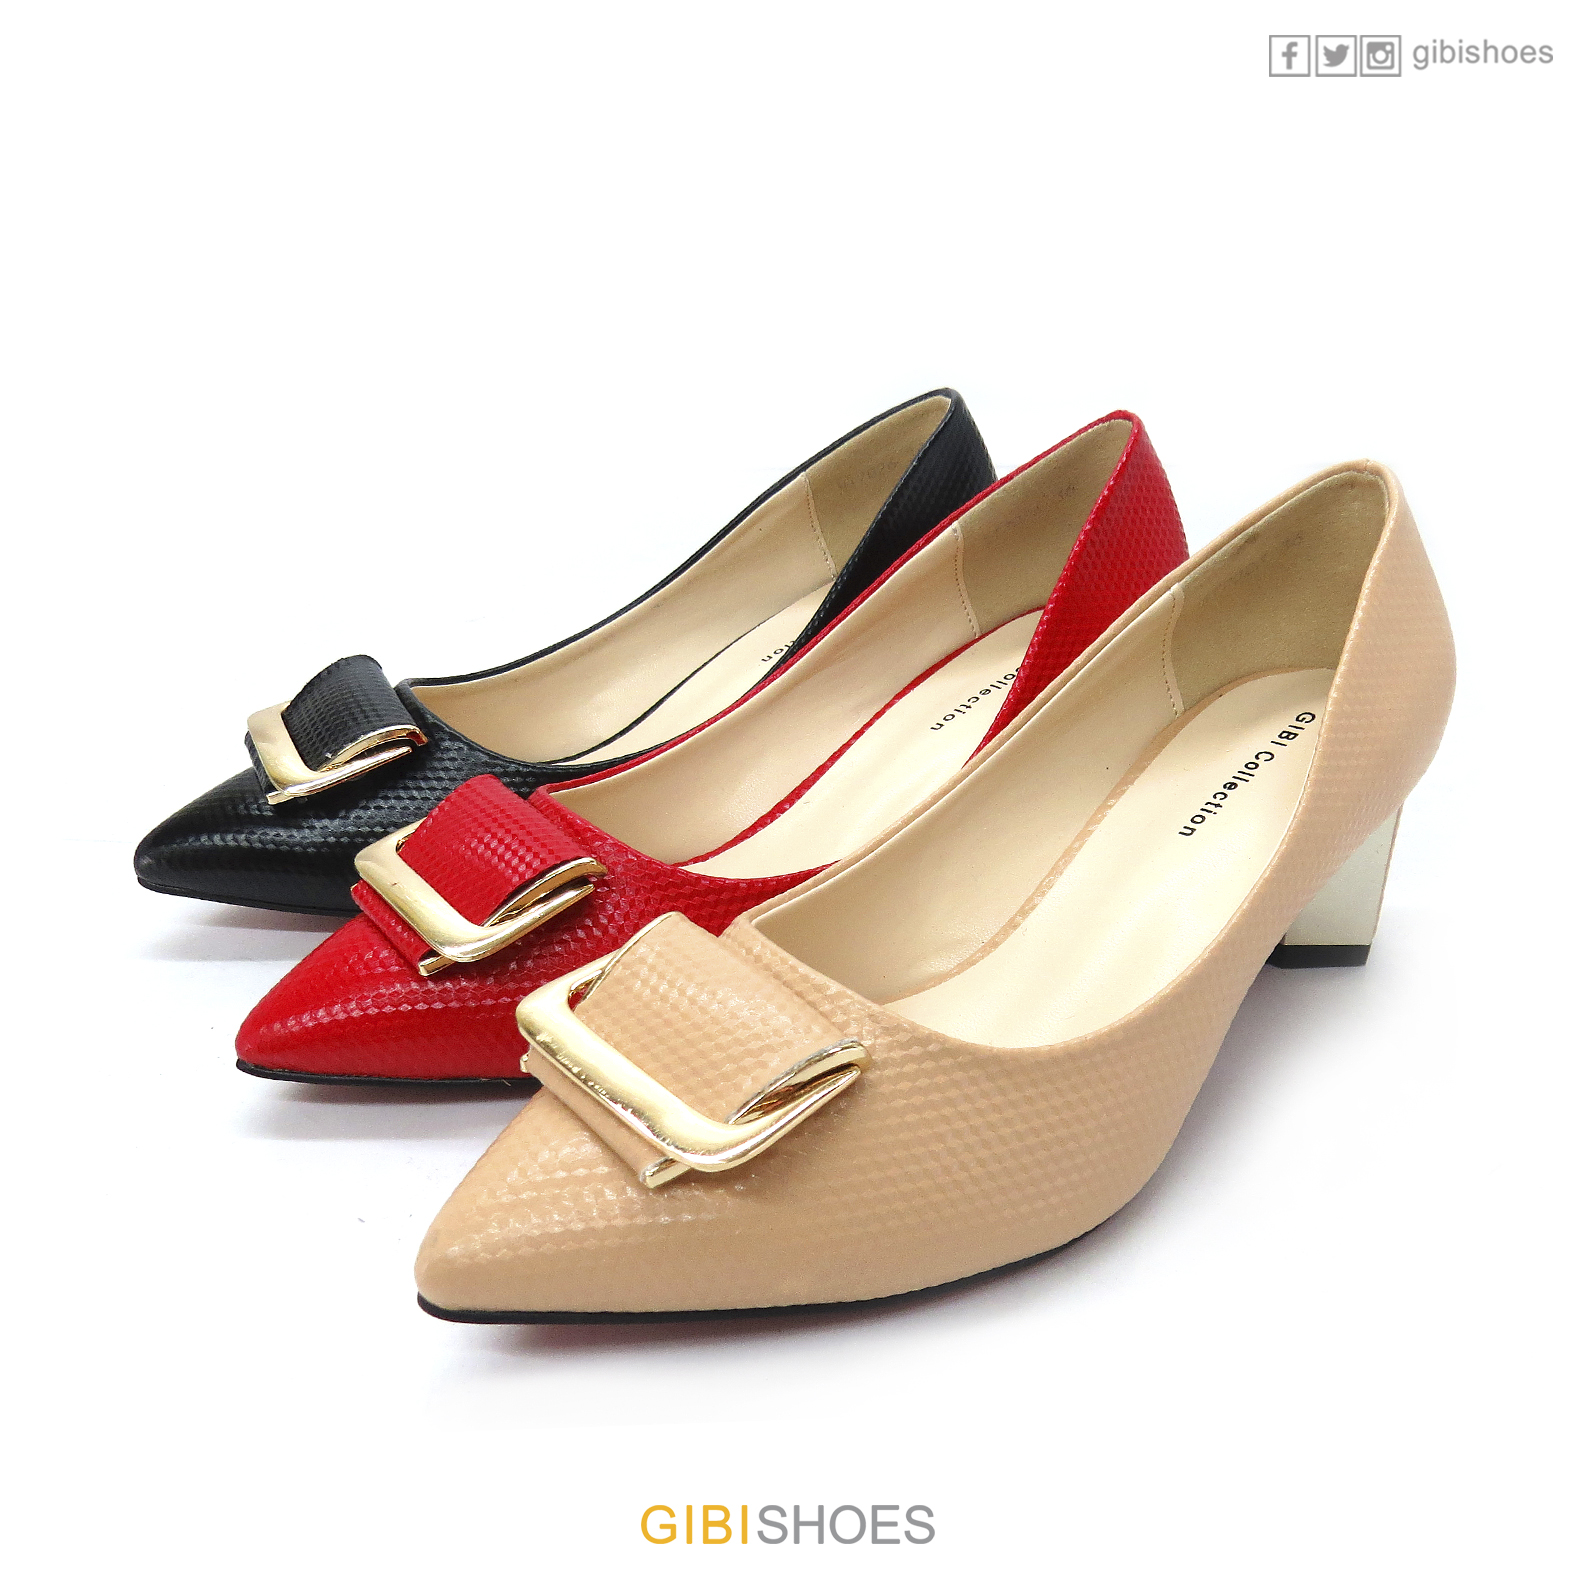 GB Shoes | Dillard's